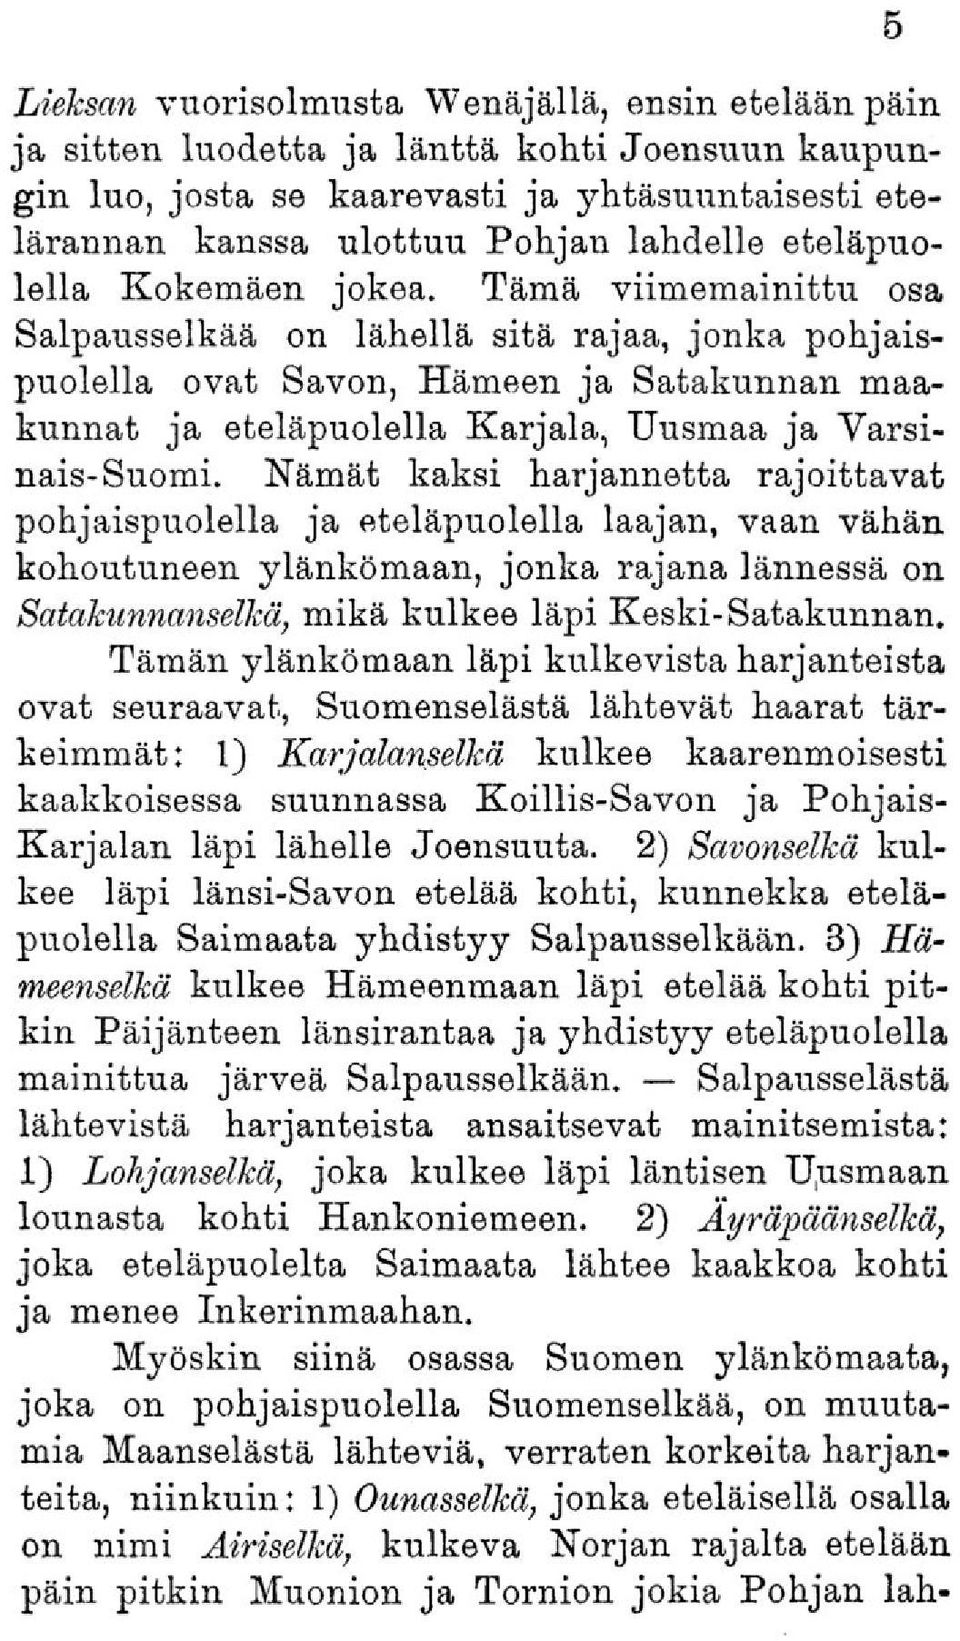 Tämä viimemainittu osa Salpausselkää on lähellä sitä rajaa, jonka pohjaispuolella ovat Savon, Hämeen ja Satakunnan maakunnat ja eteläpuolella Karjala, Uusmaa ja Varsinais-Suomi.